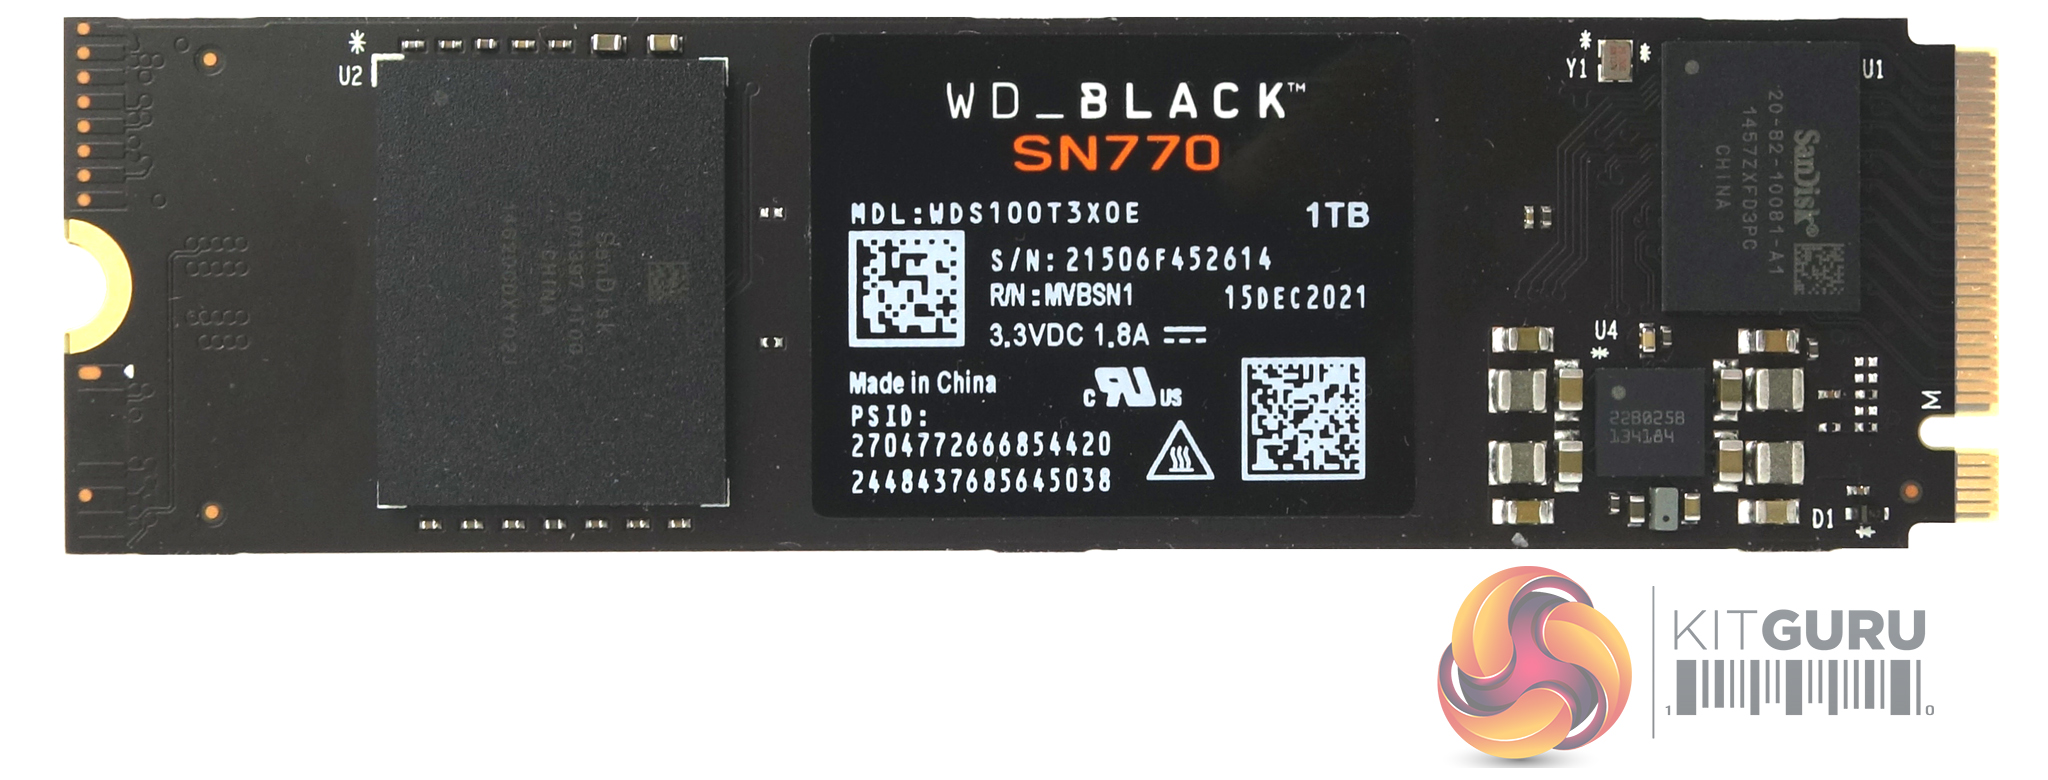 2 SSD Black Review | KitGuru- SN770 WD Part 1TB